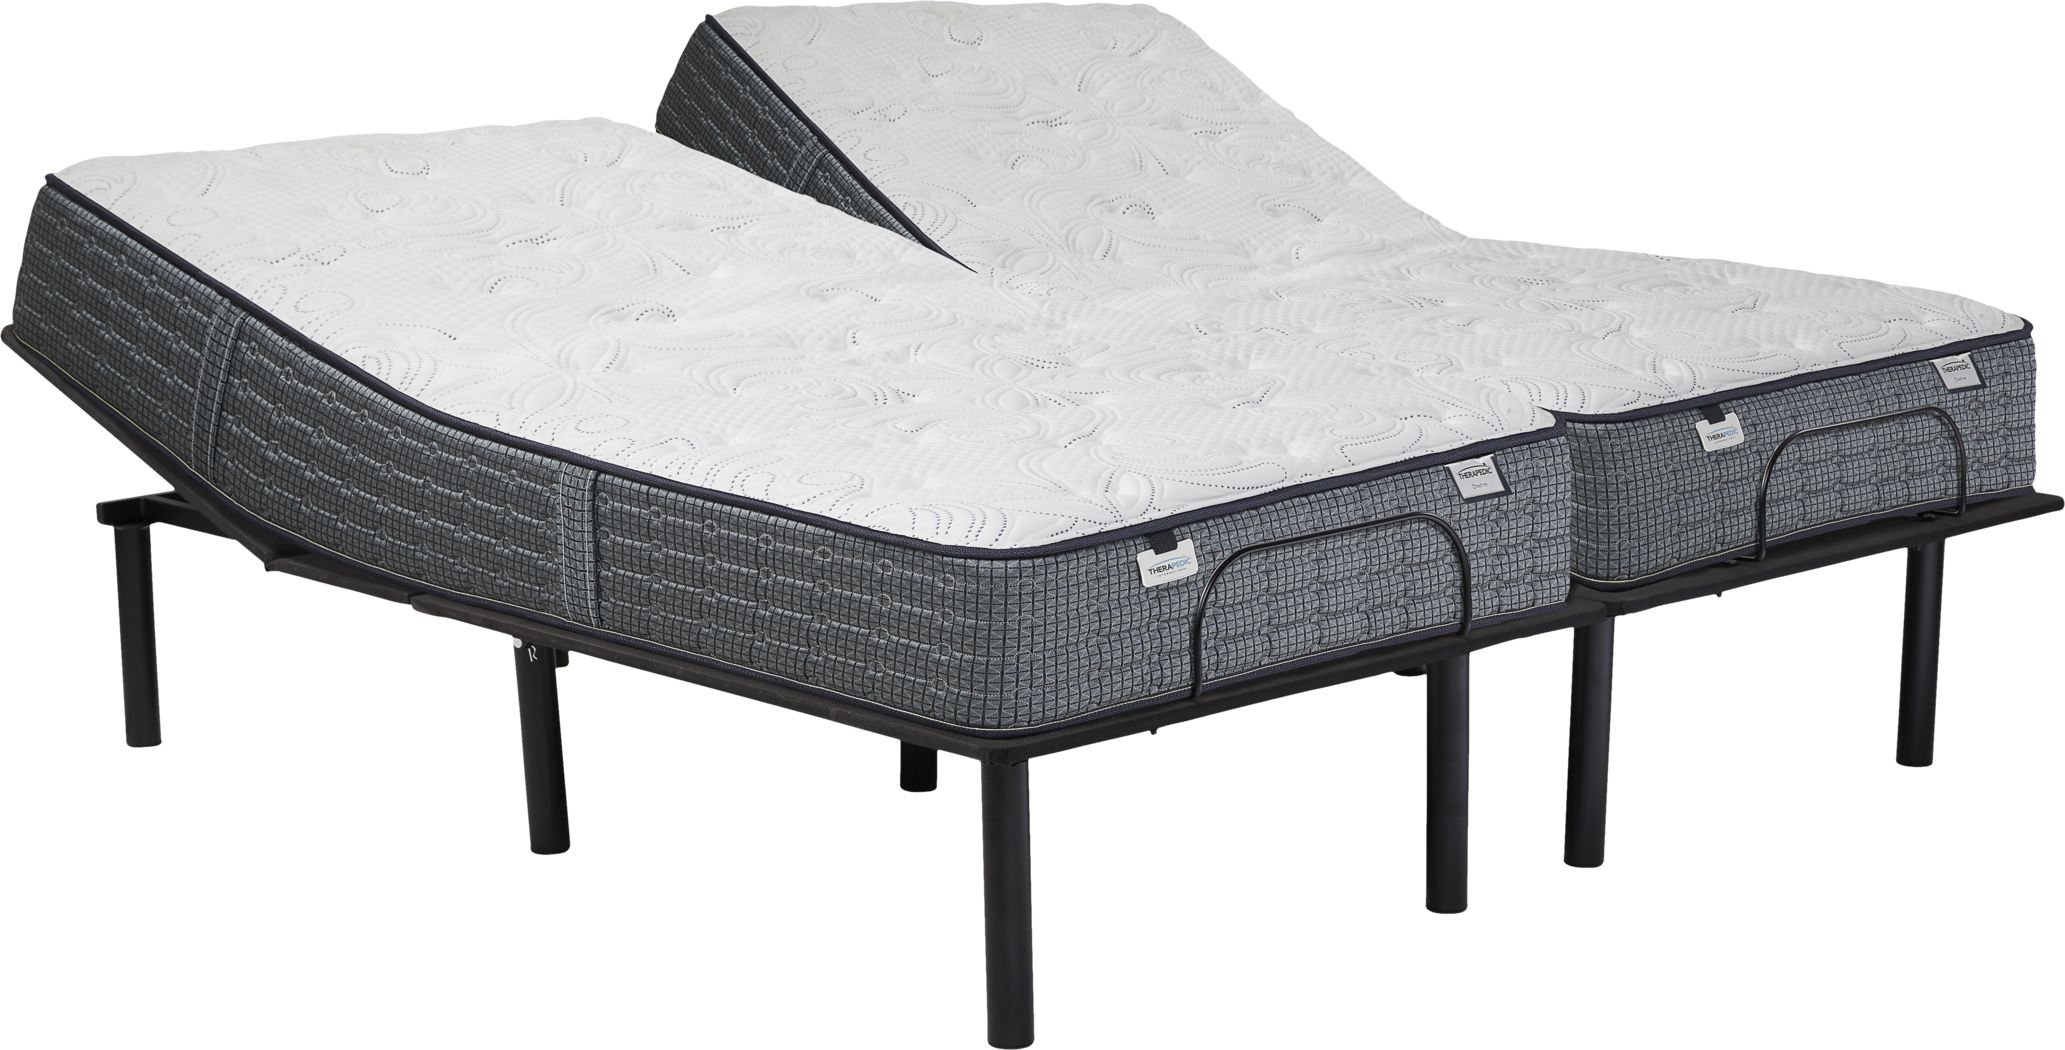 split king mattress for adjustable beds